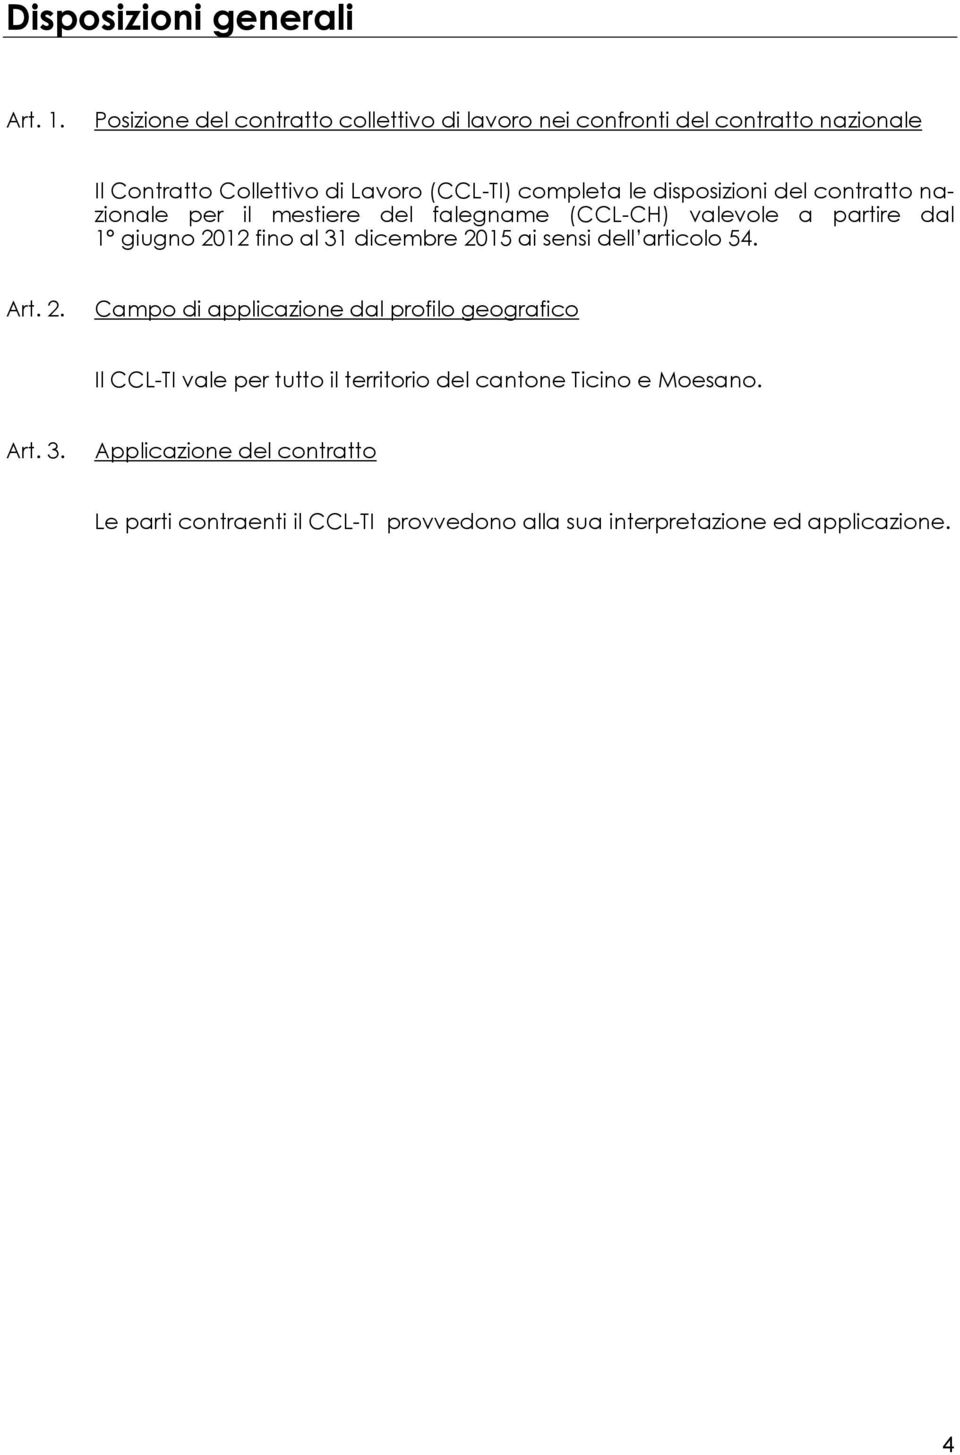 disposizioni del contratto nazionale per il mestiere del falegname (CCL-CH) valevole a partire dal 1 giugno 2012 fino al 31 dicembre 2015 ai